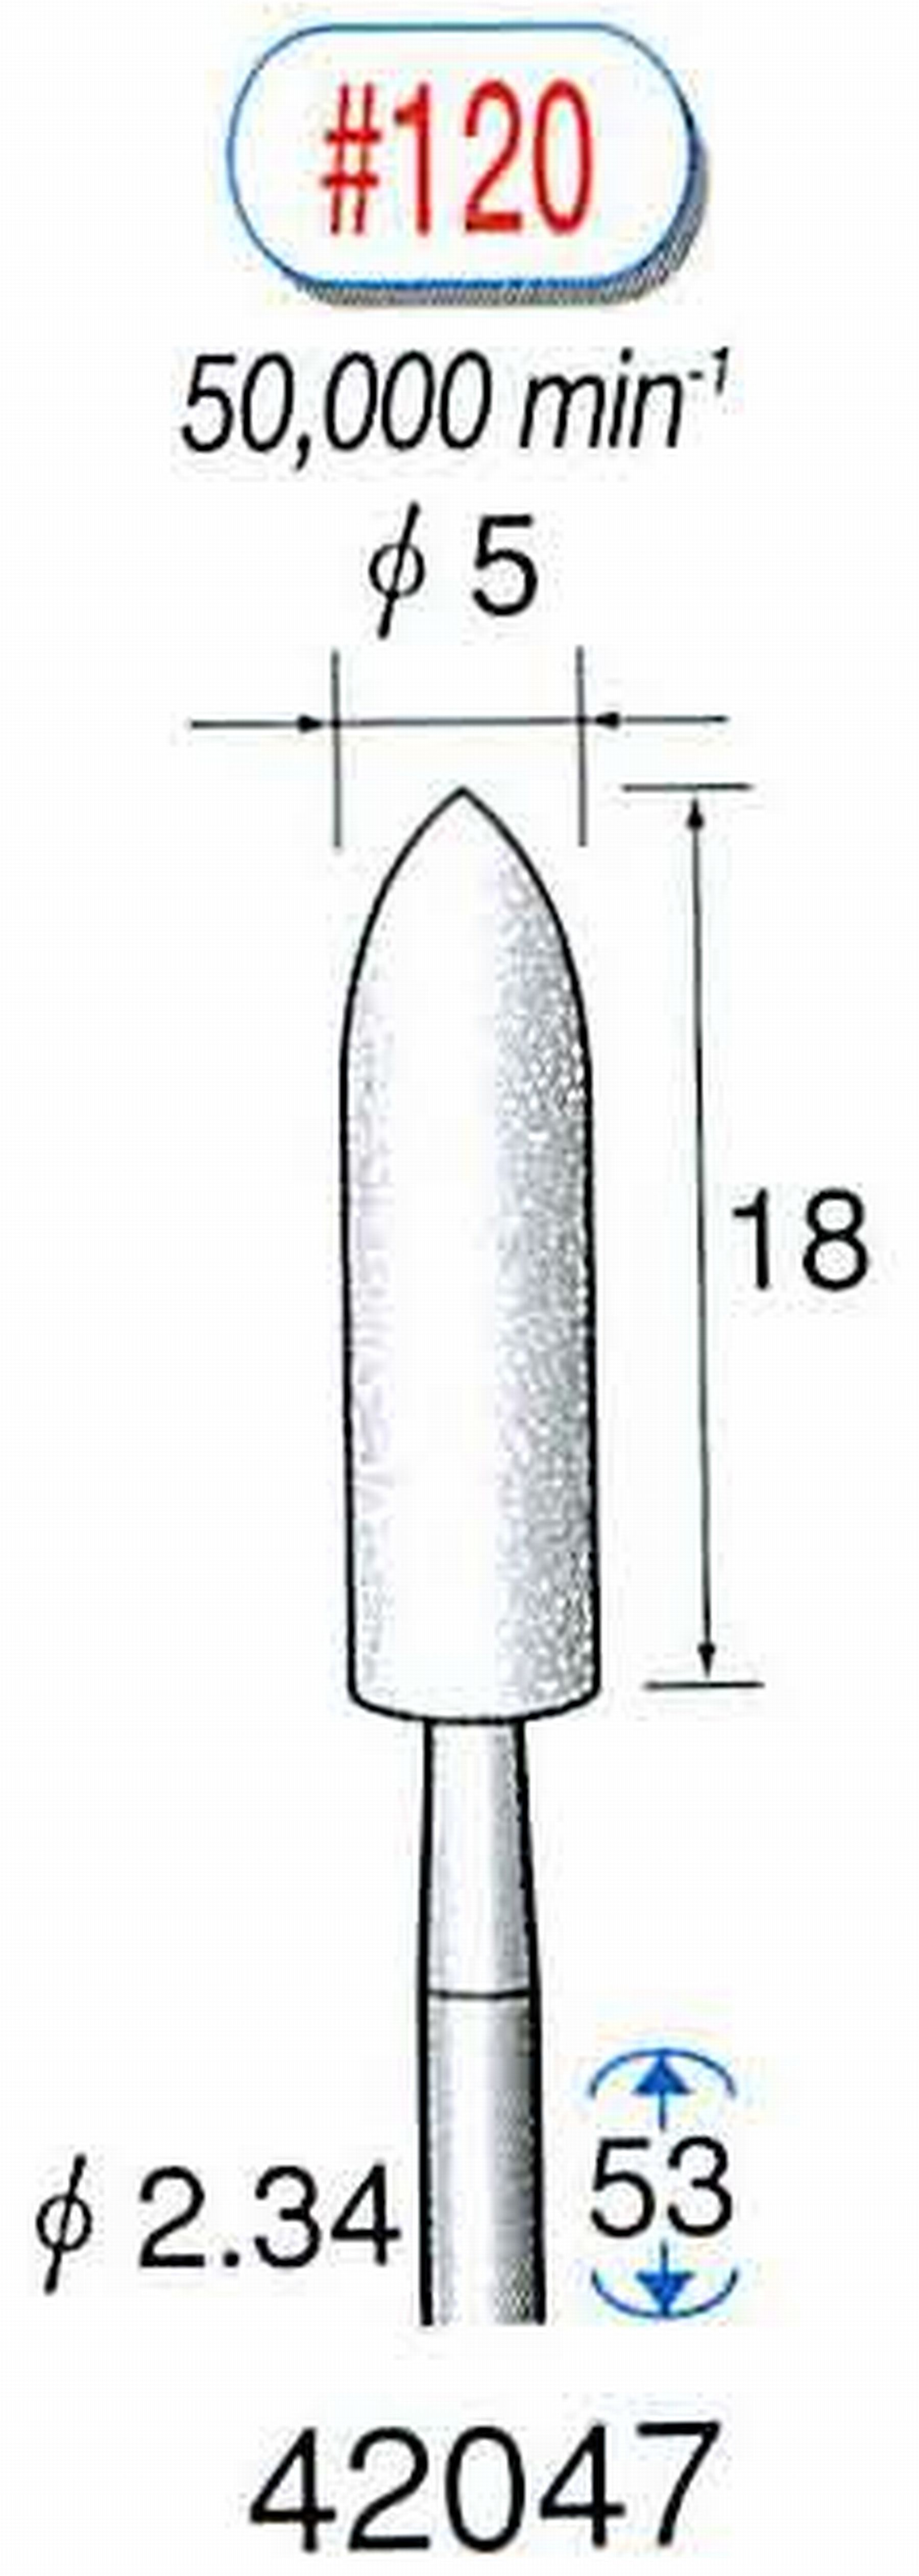 ナカニシ/NAKANISHI 軸付砥石(WA砥粒) 軸径(シャンク) φ2.34mm 42047